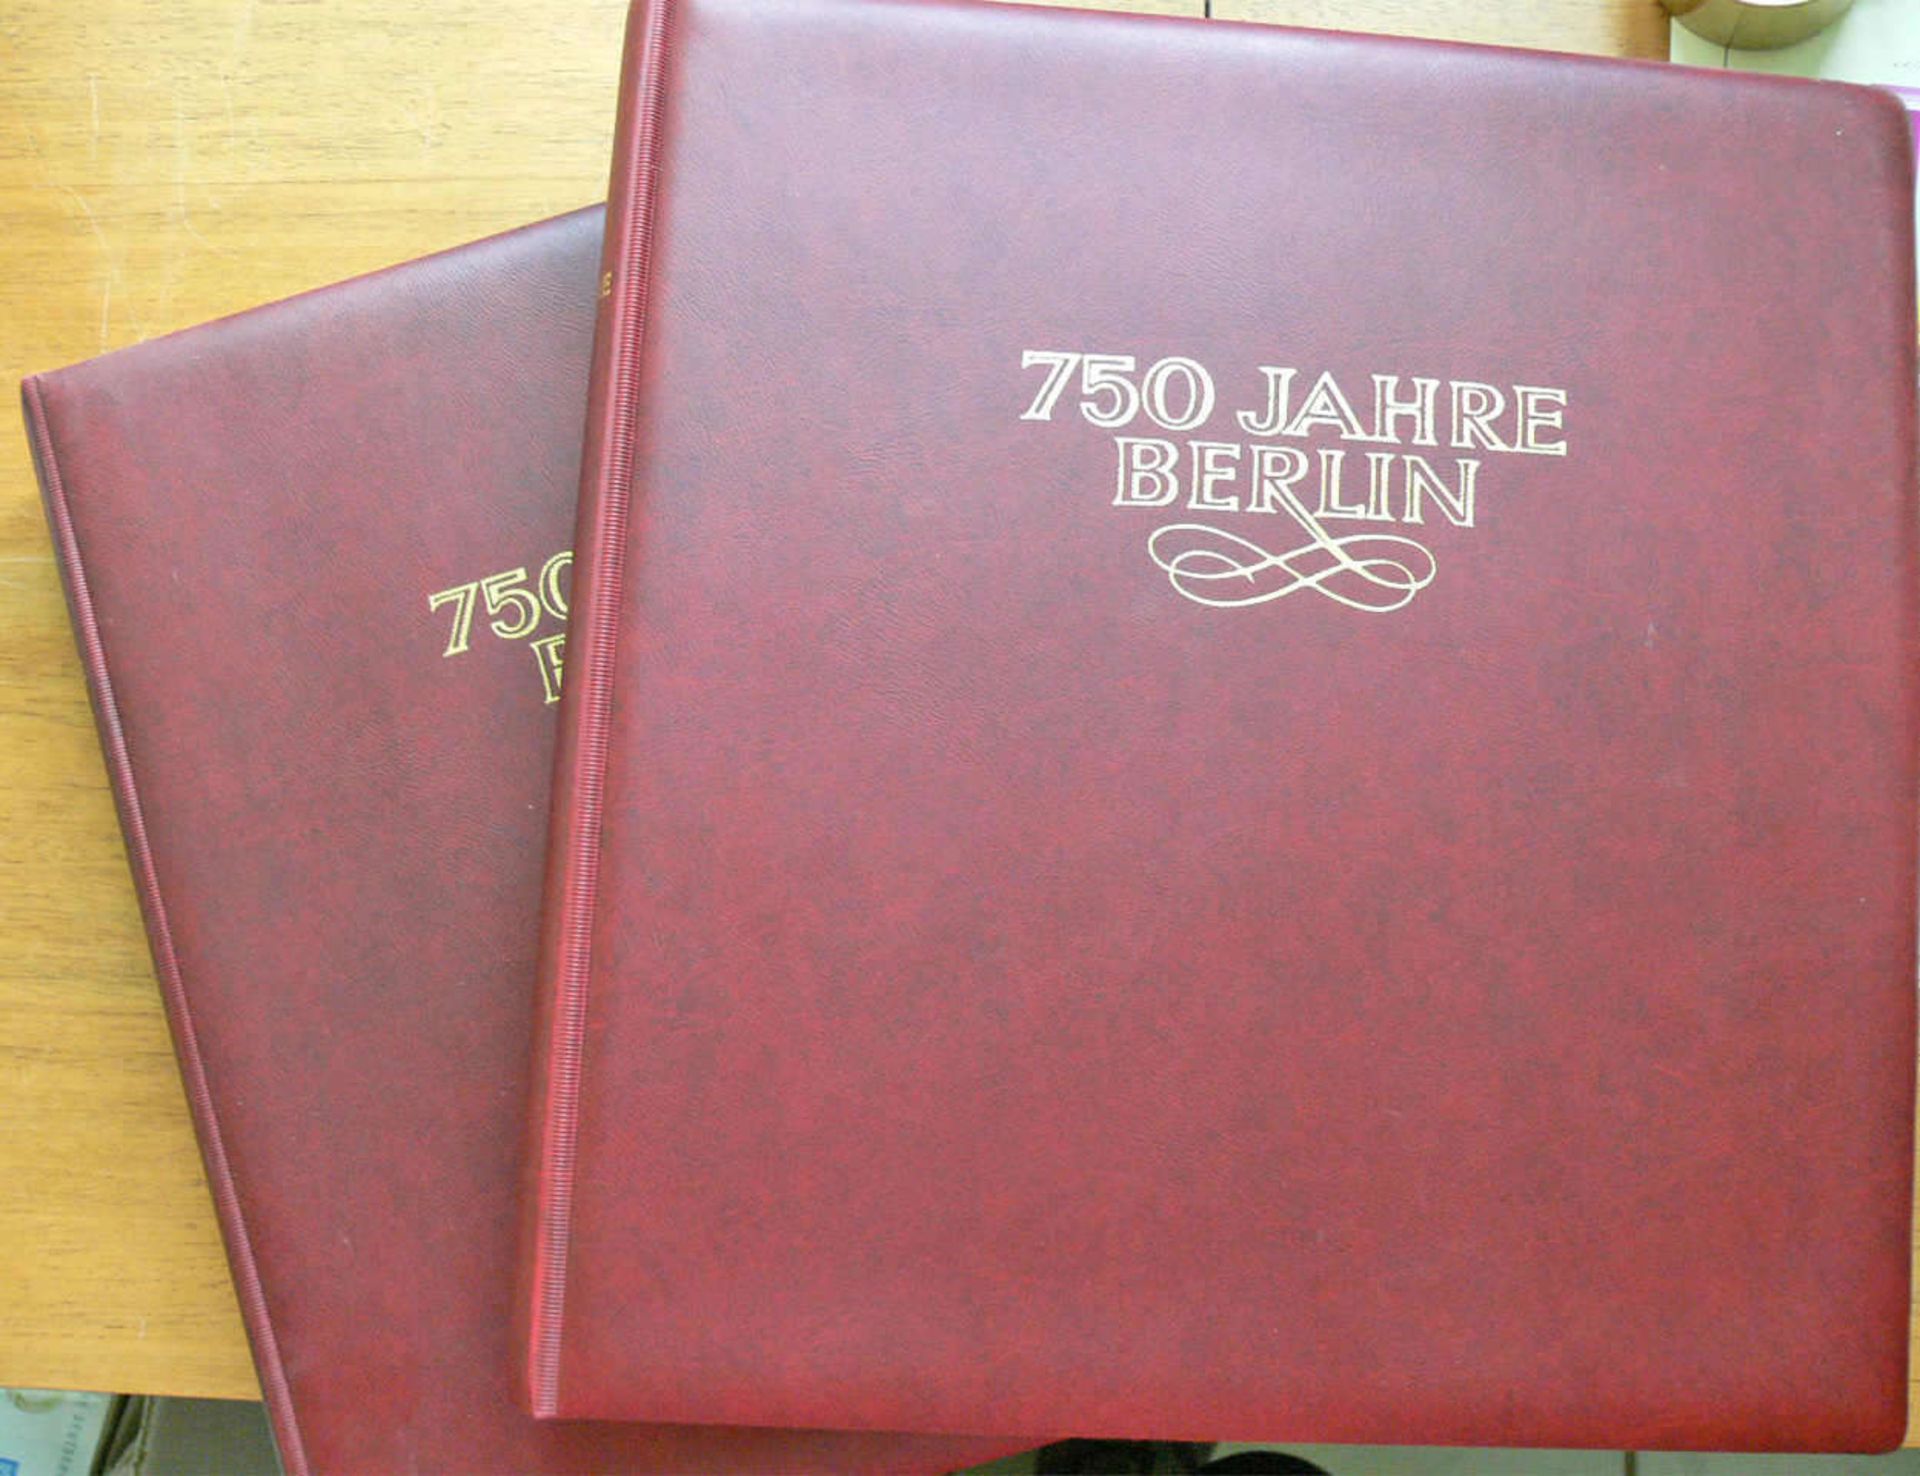 Berlin. Zwei Vordruck - Alben "750 Jahre Berlin". Hoher Abo - Preis. Berlin. Two forms - albums "750